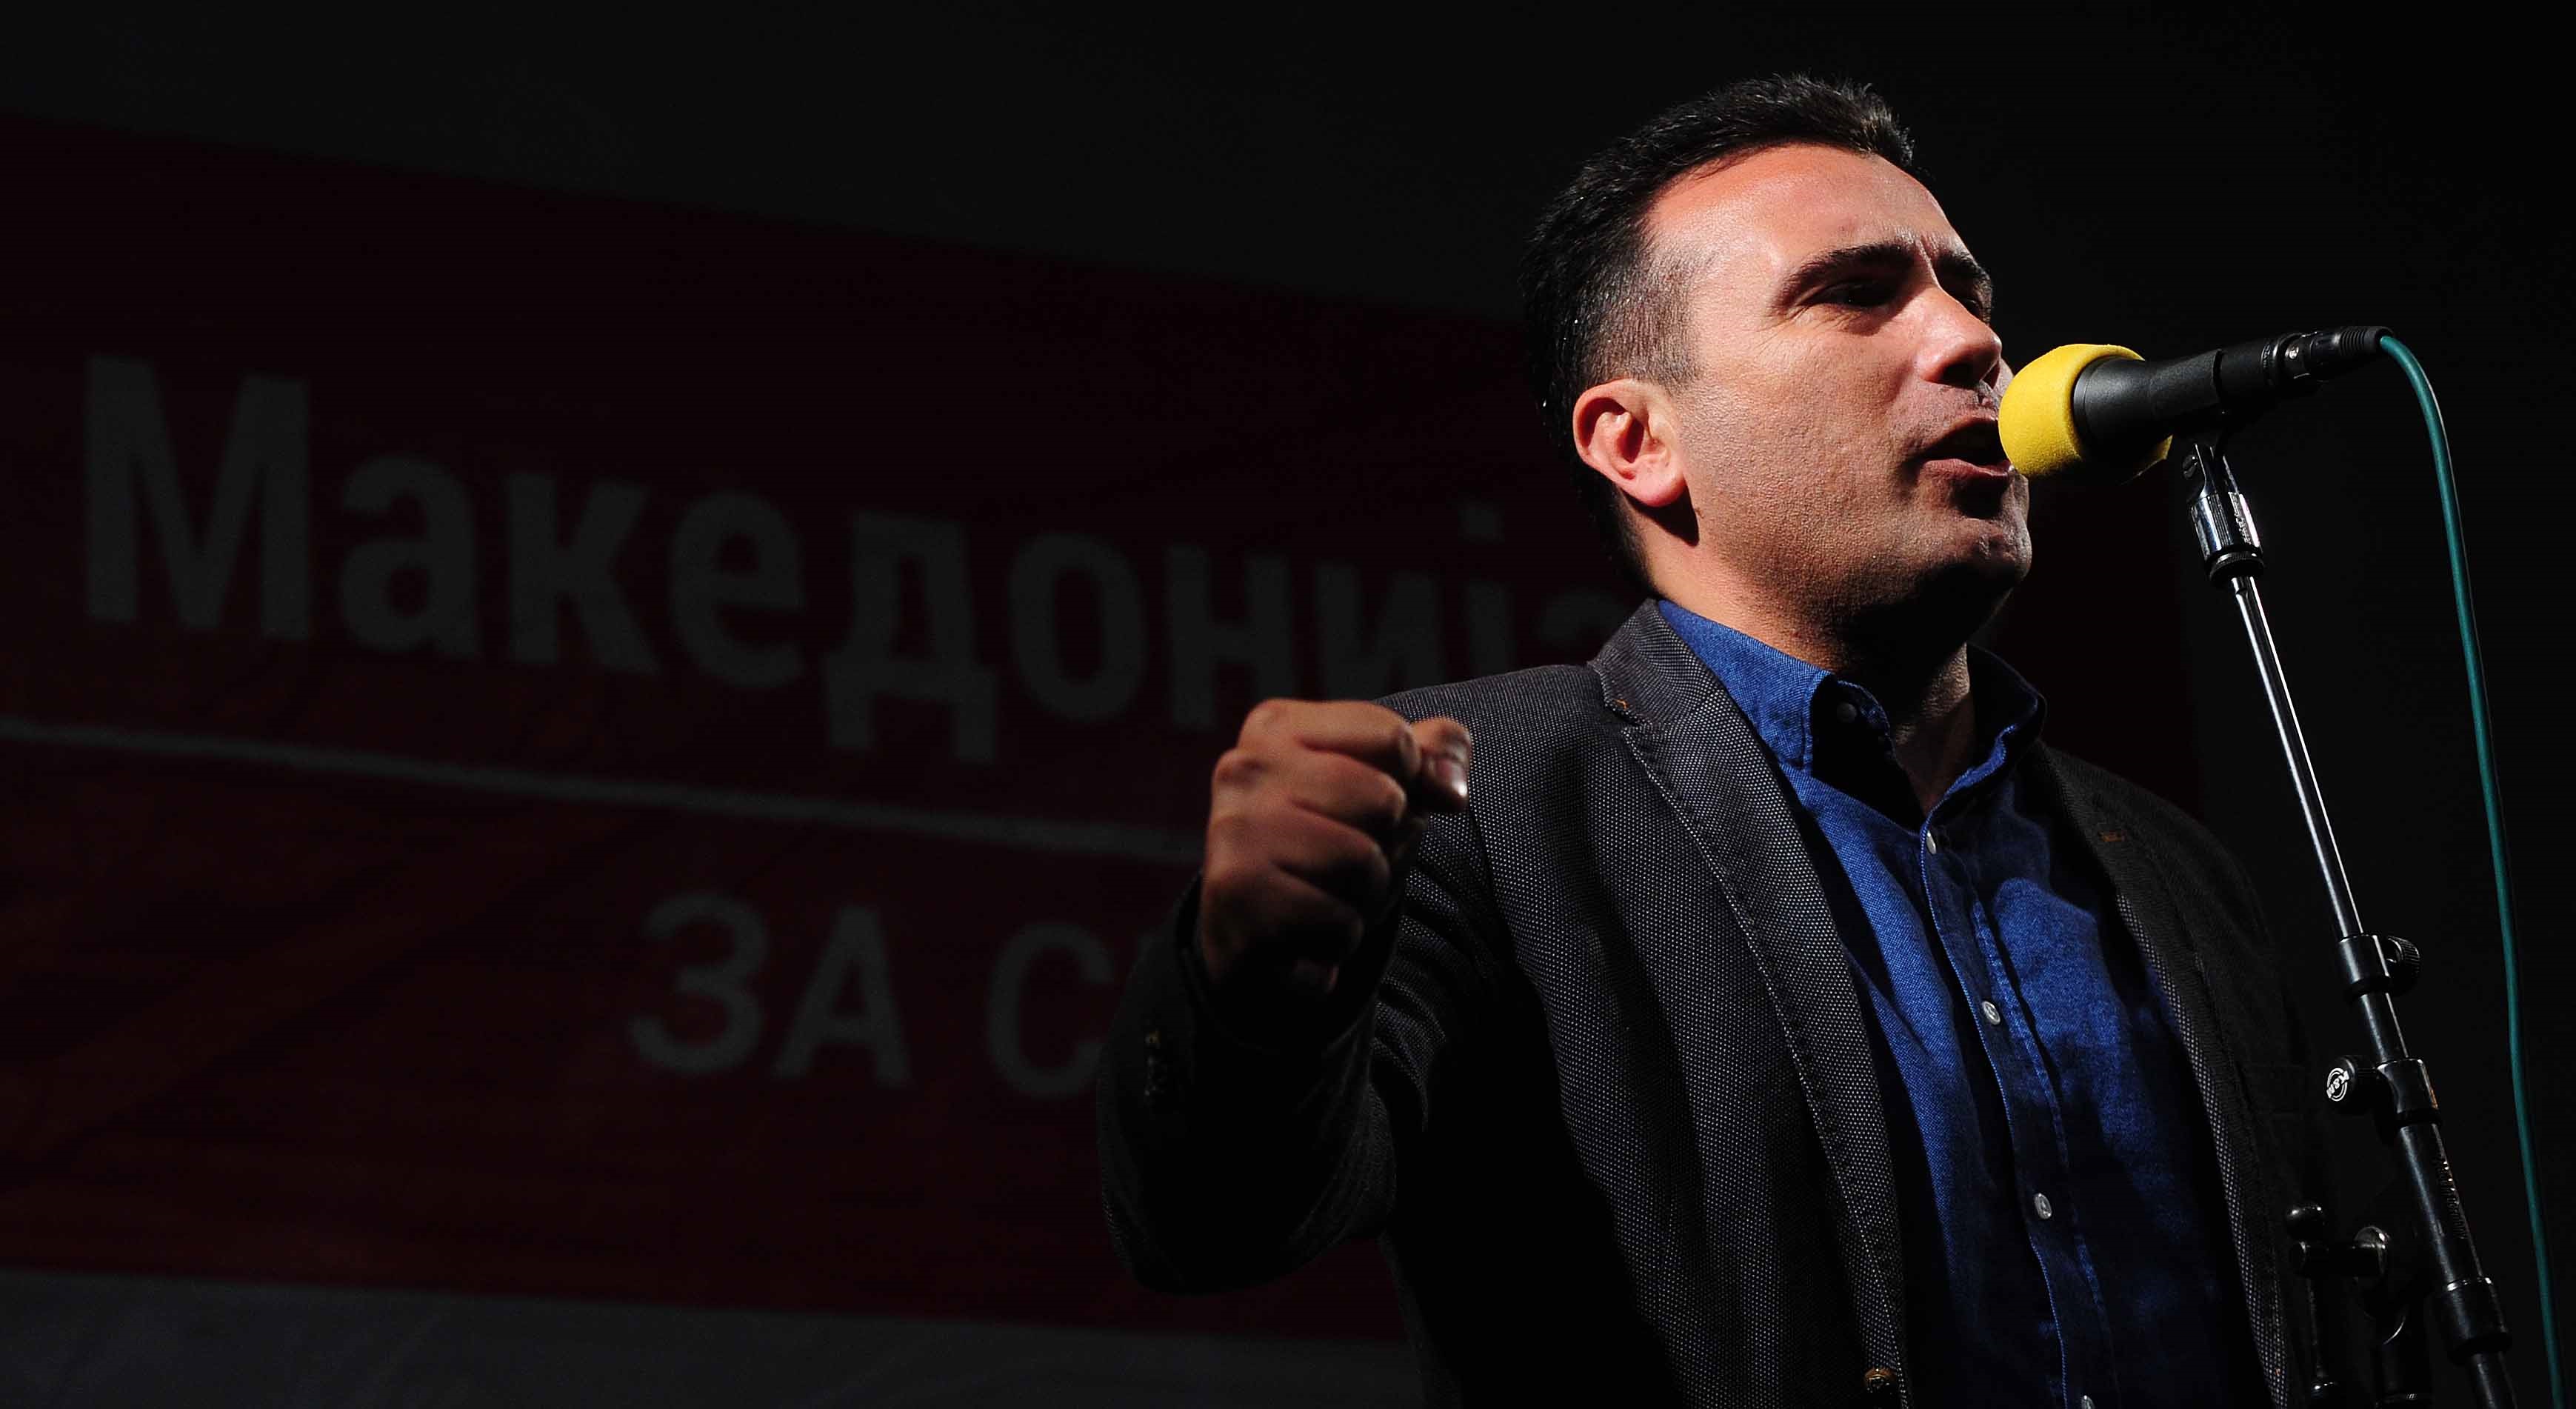 Ζάεφ: Παραμένουμε «Μακεδόνες», μιλάμε «μακεδονικά», η Ελλάδα το έχει αποδεχθεί